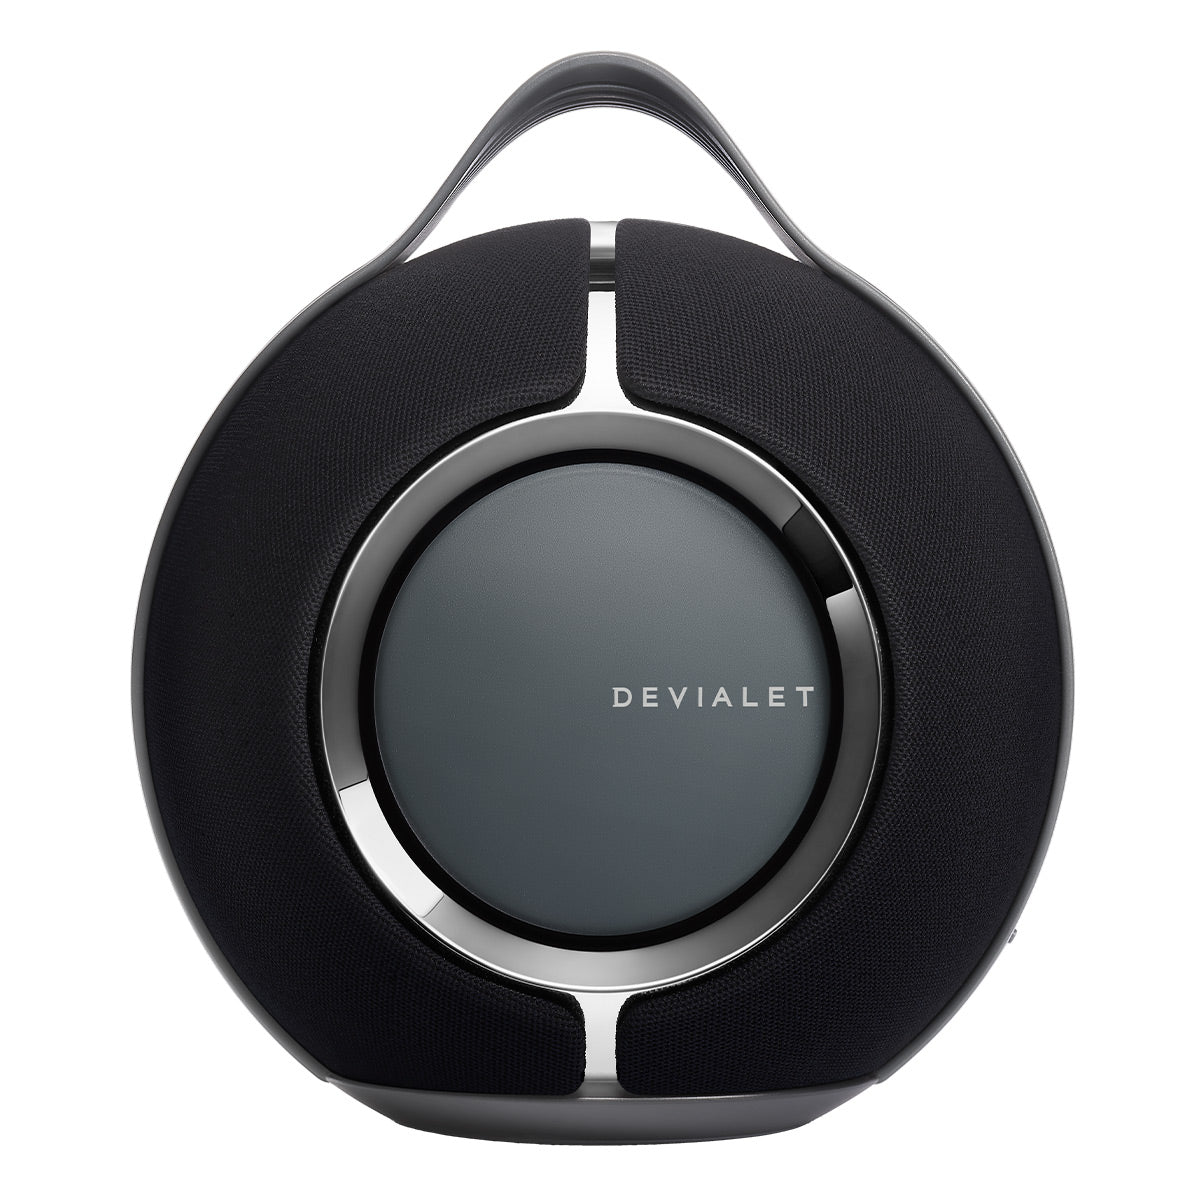 Devialet Phantom Premium Wireless Speaker Tips & Tricks